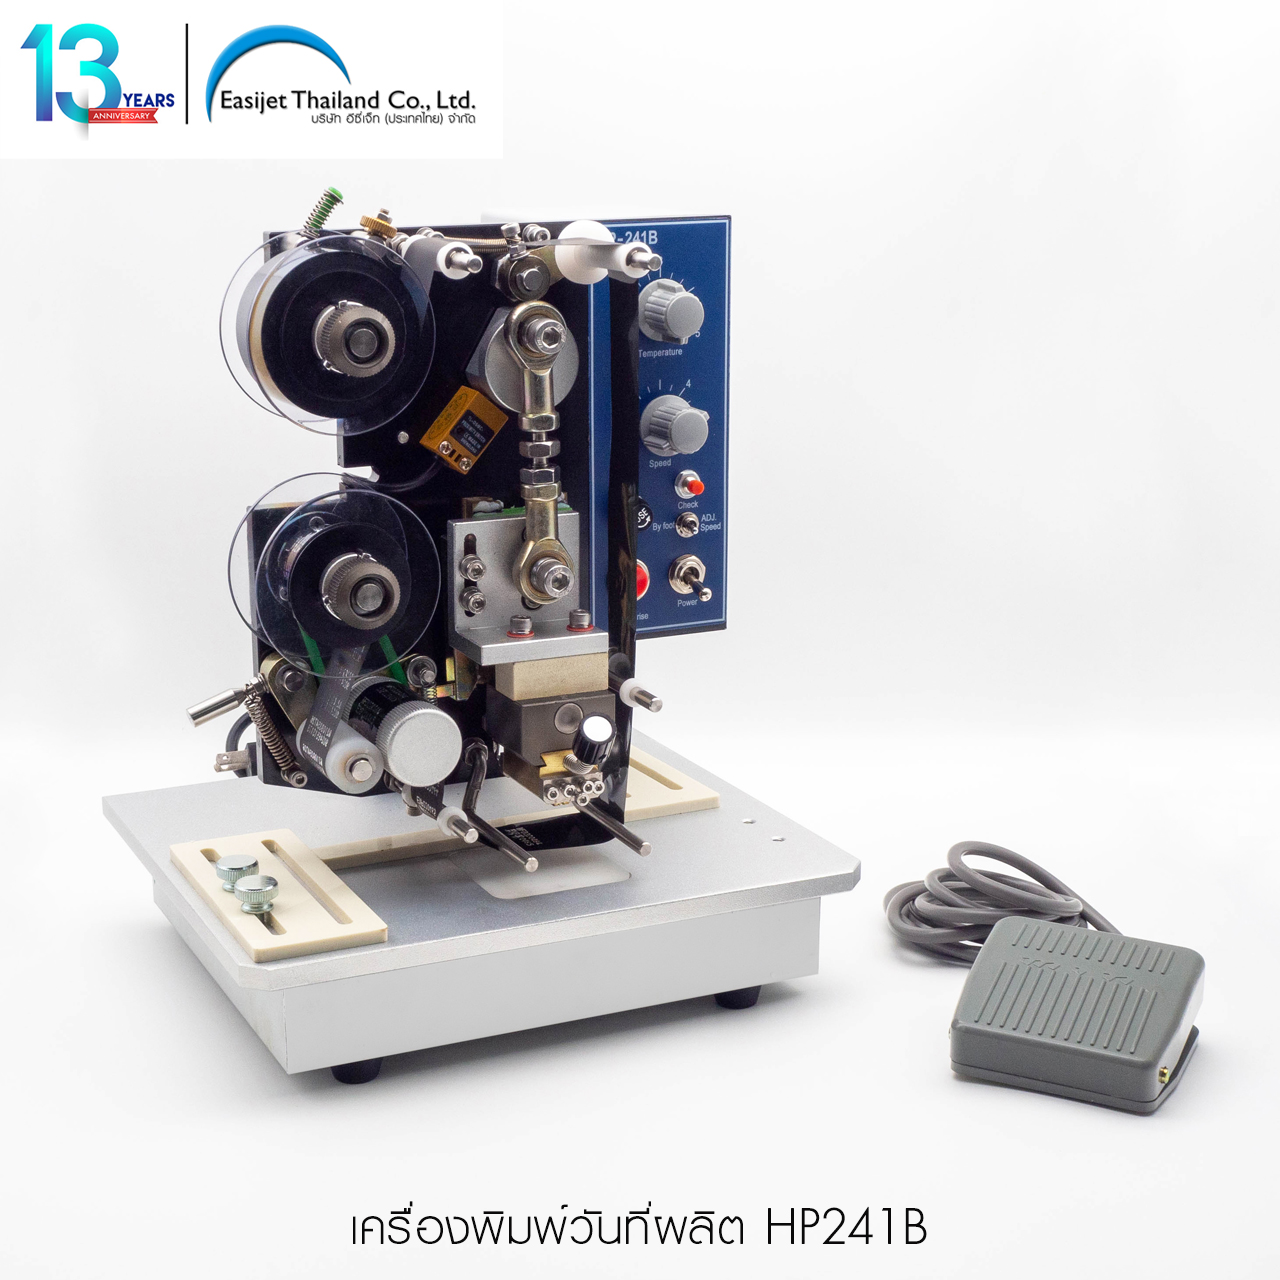 เครื่องพิมพ์วันที่ HP241B พิมพ์ซอง กล่อง ถุง ราคาถูก สนใจโทร. 090-563-4943